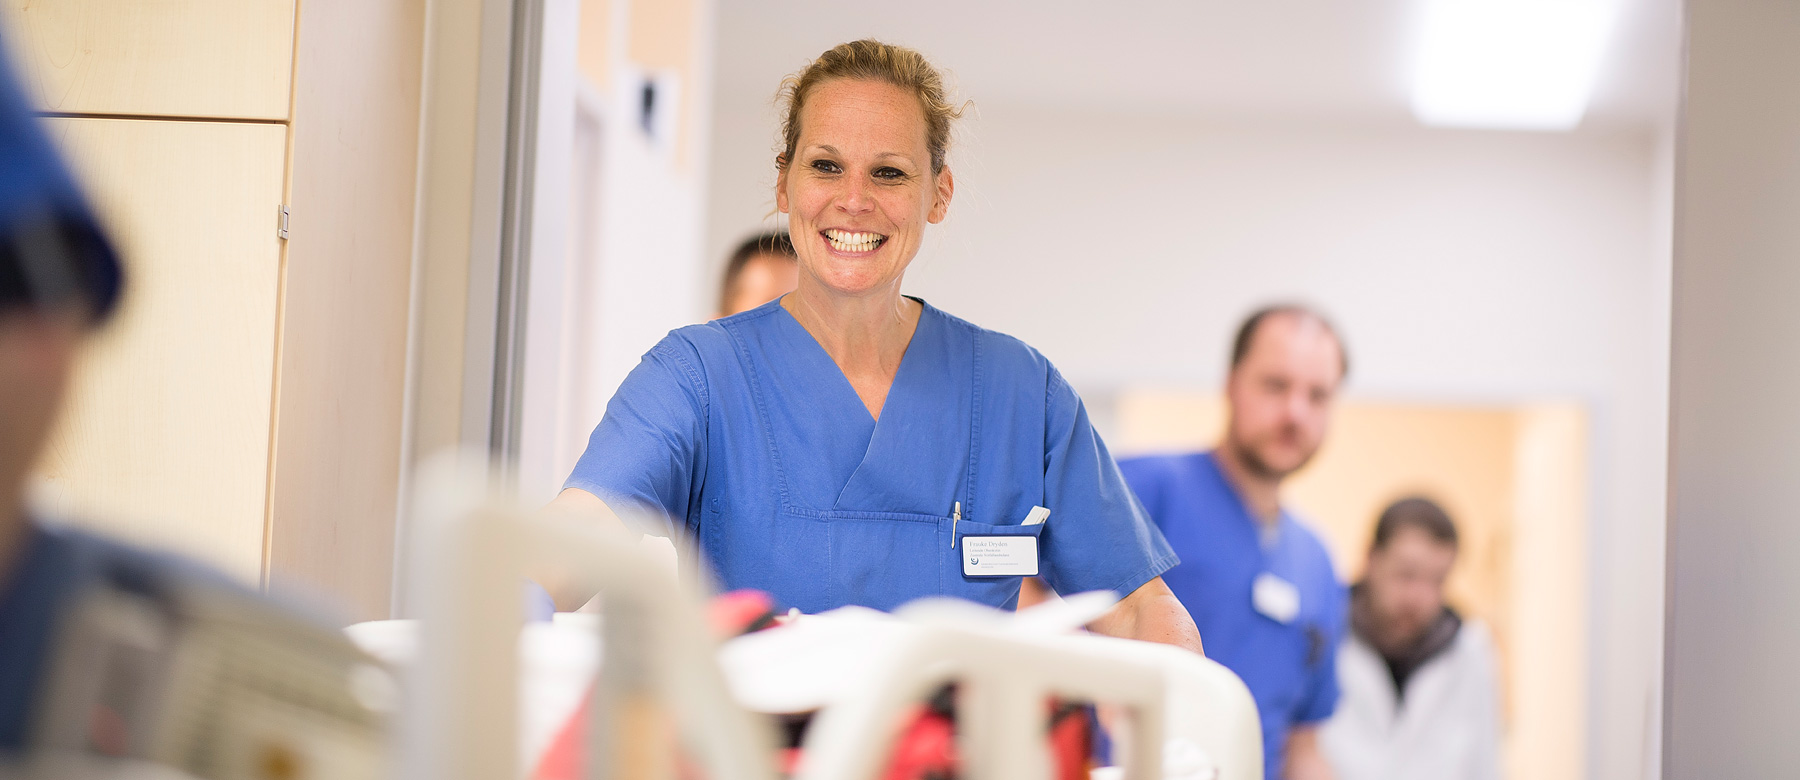 Frauke Dryden, Leitende Ärztin der Notaufnahme, lächelt einen Patienten im Patientenbett an.